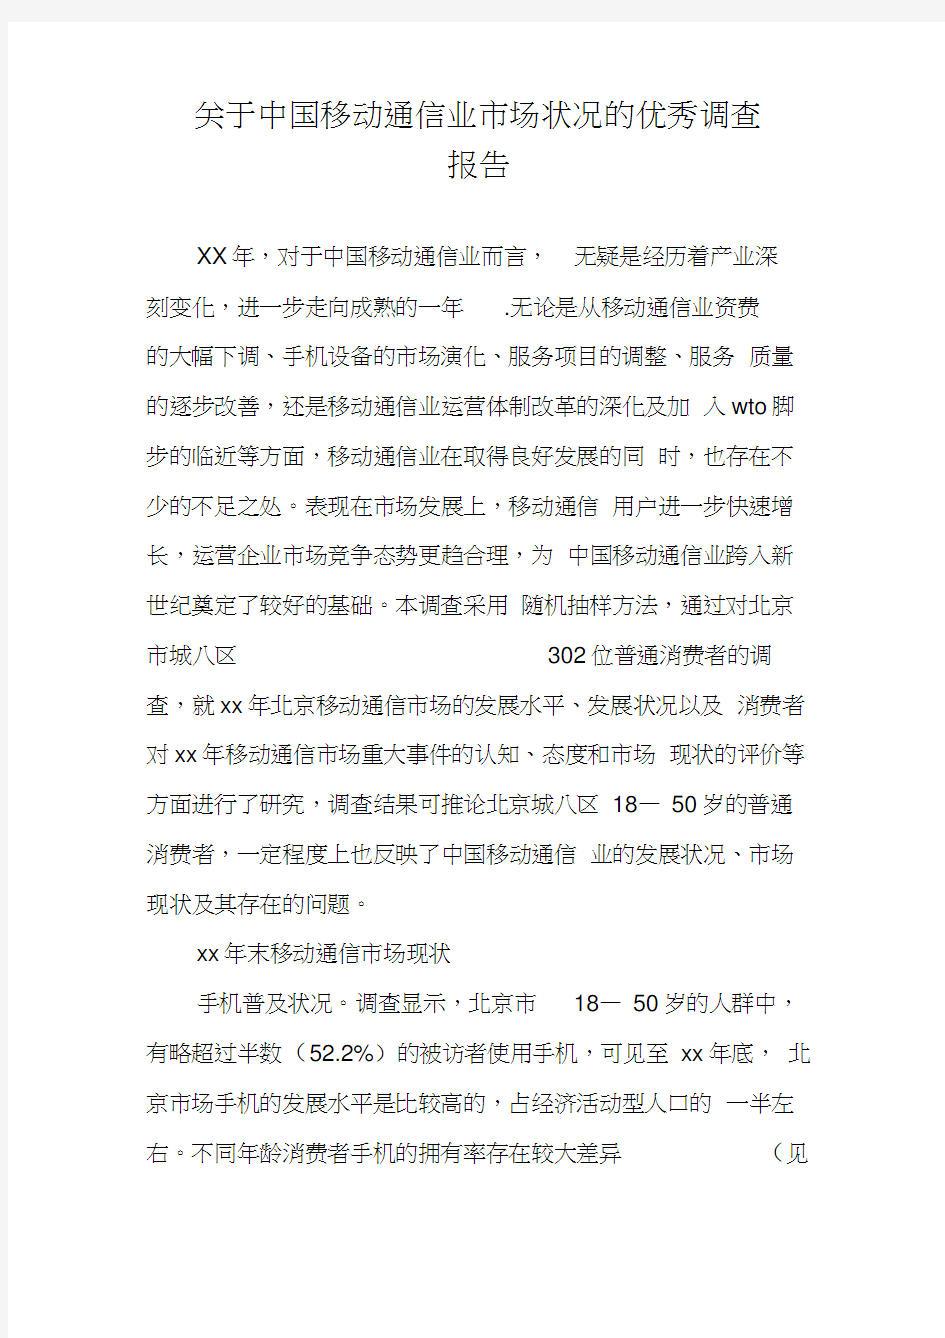 关于中国移动通信业市场状况的优秀调查报告(20210215115525)